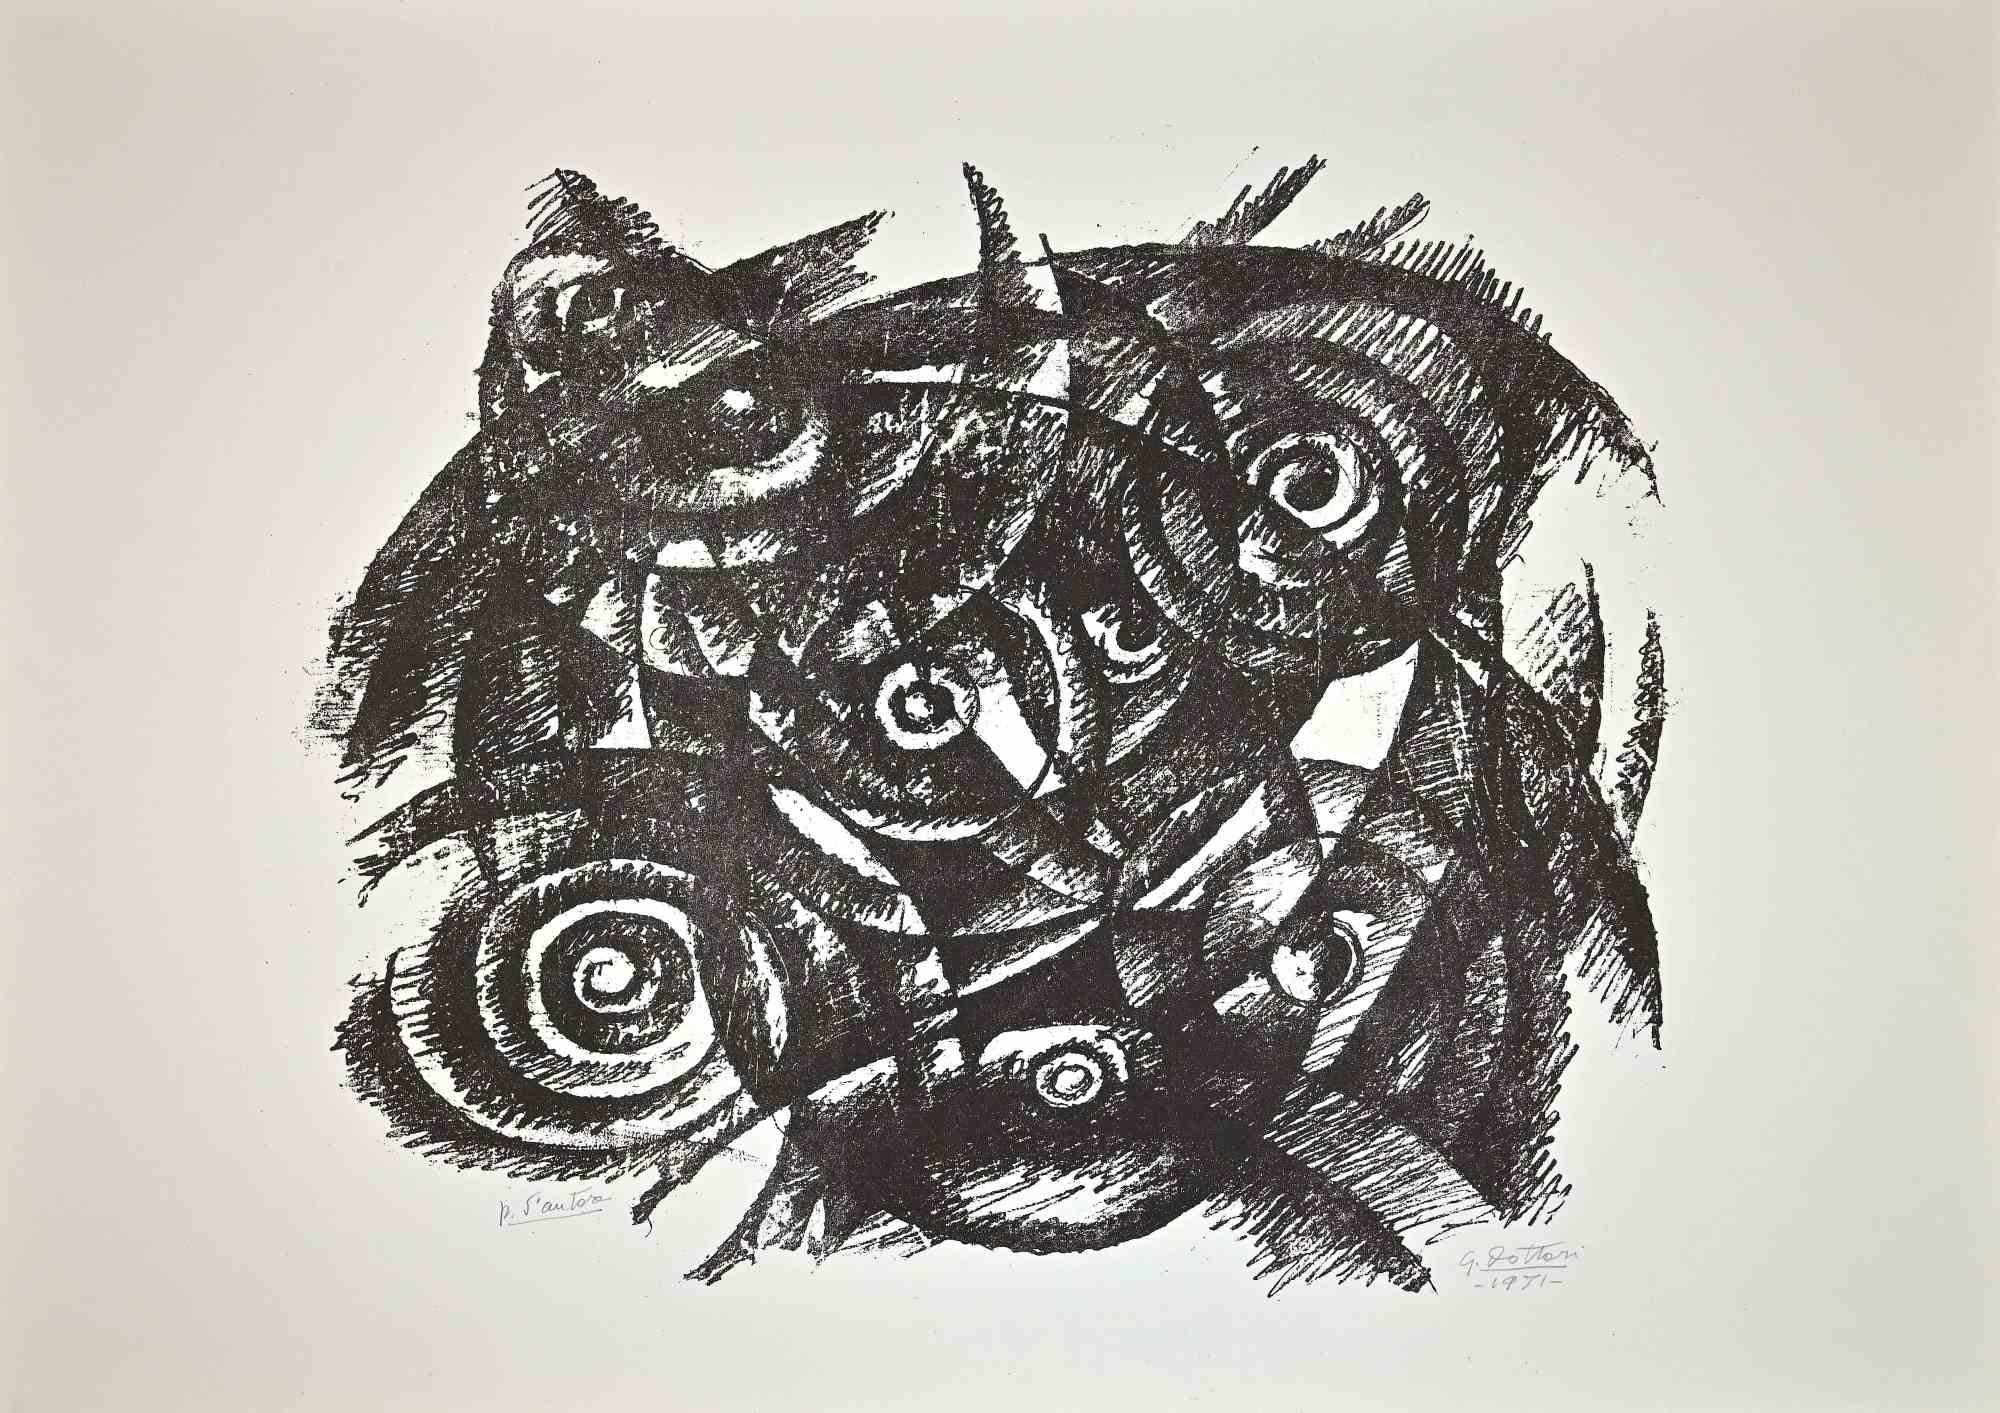 Abstract Composition - Lithograph by Gerardo Dottori - 1971 